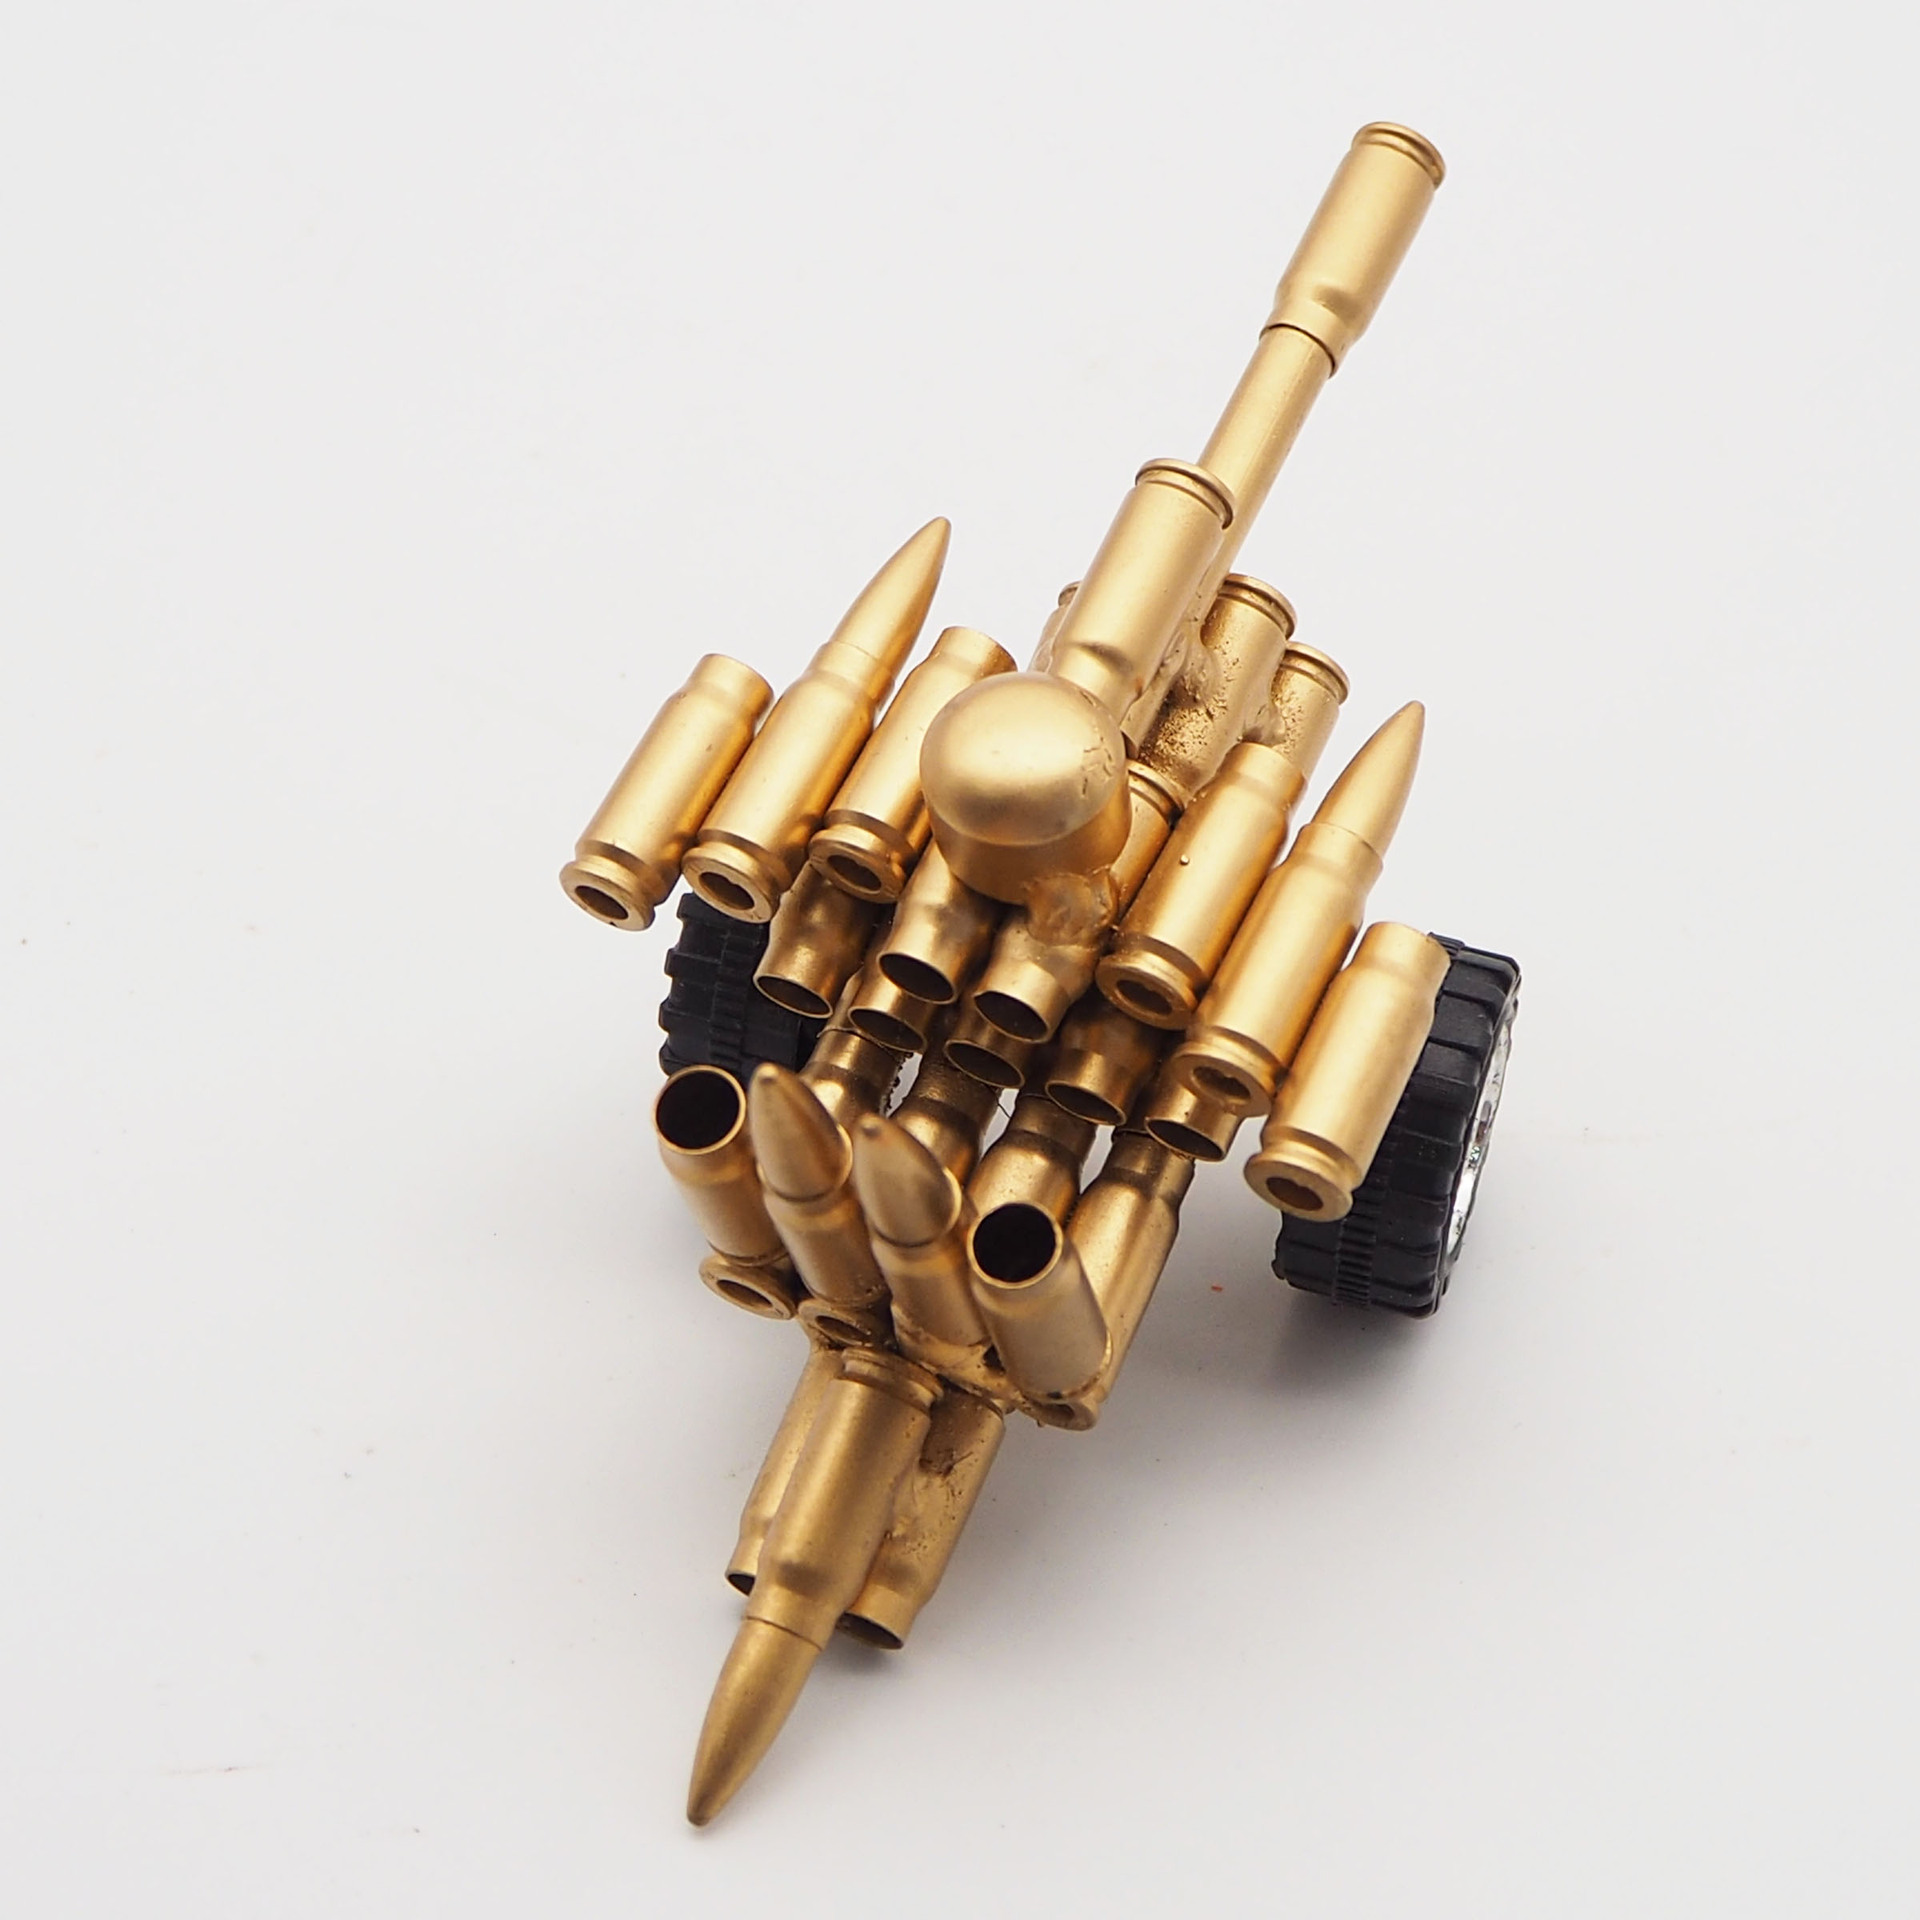 弹壳工艺品批发 子弹壳焊接的机枪玩具模型 只能作为家居装饰-阿里巴巴